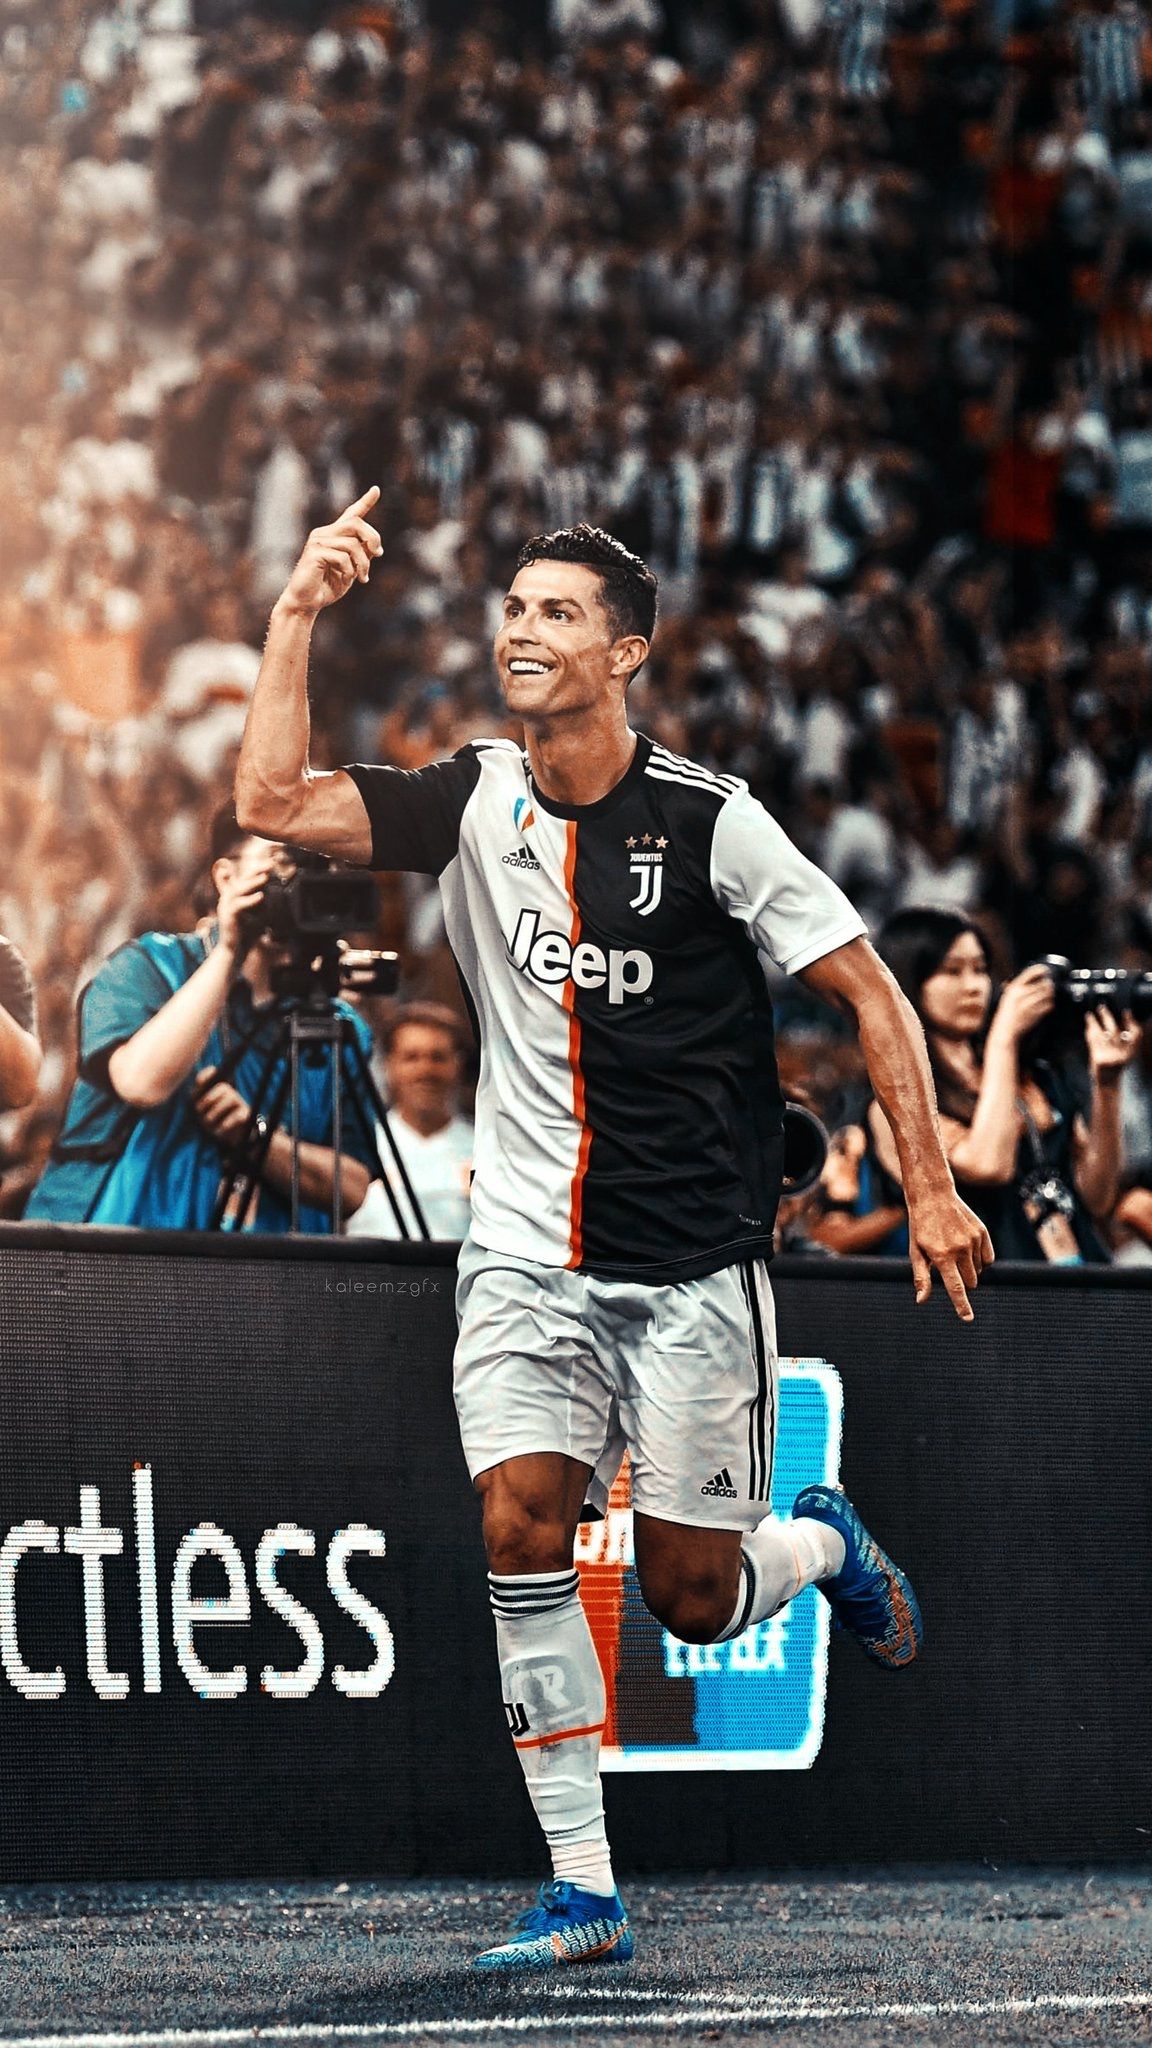 Hình nền Ronaldo ngầu và chất sẽ khiến cho màn hình của bạn trở nên sành điệu và phong cách hơn bao giờ hết. Hãy chiêm ngưỡng những tác phẩm nghệ thuật số này để thấy được sự khỏe khoắn và cá tính của ngôi sao bóng đá nổi tiếng này.